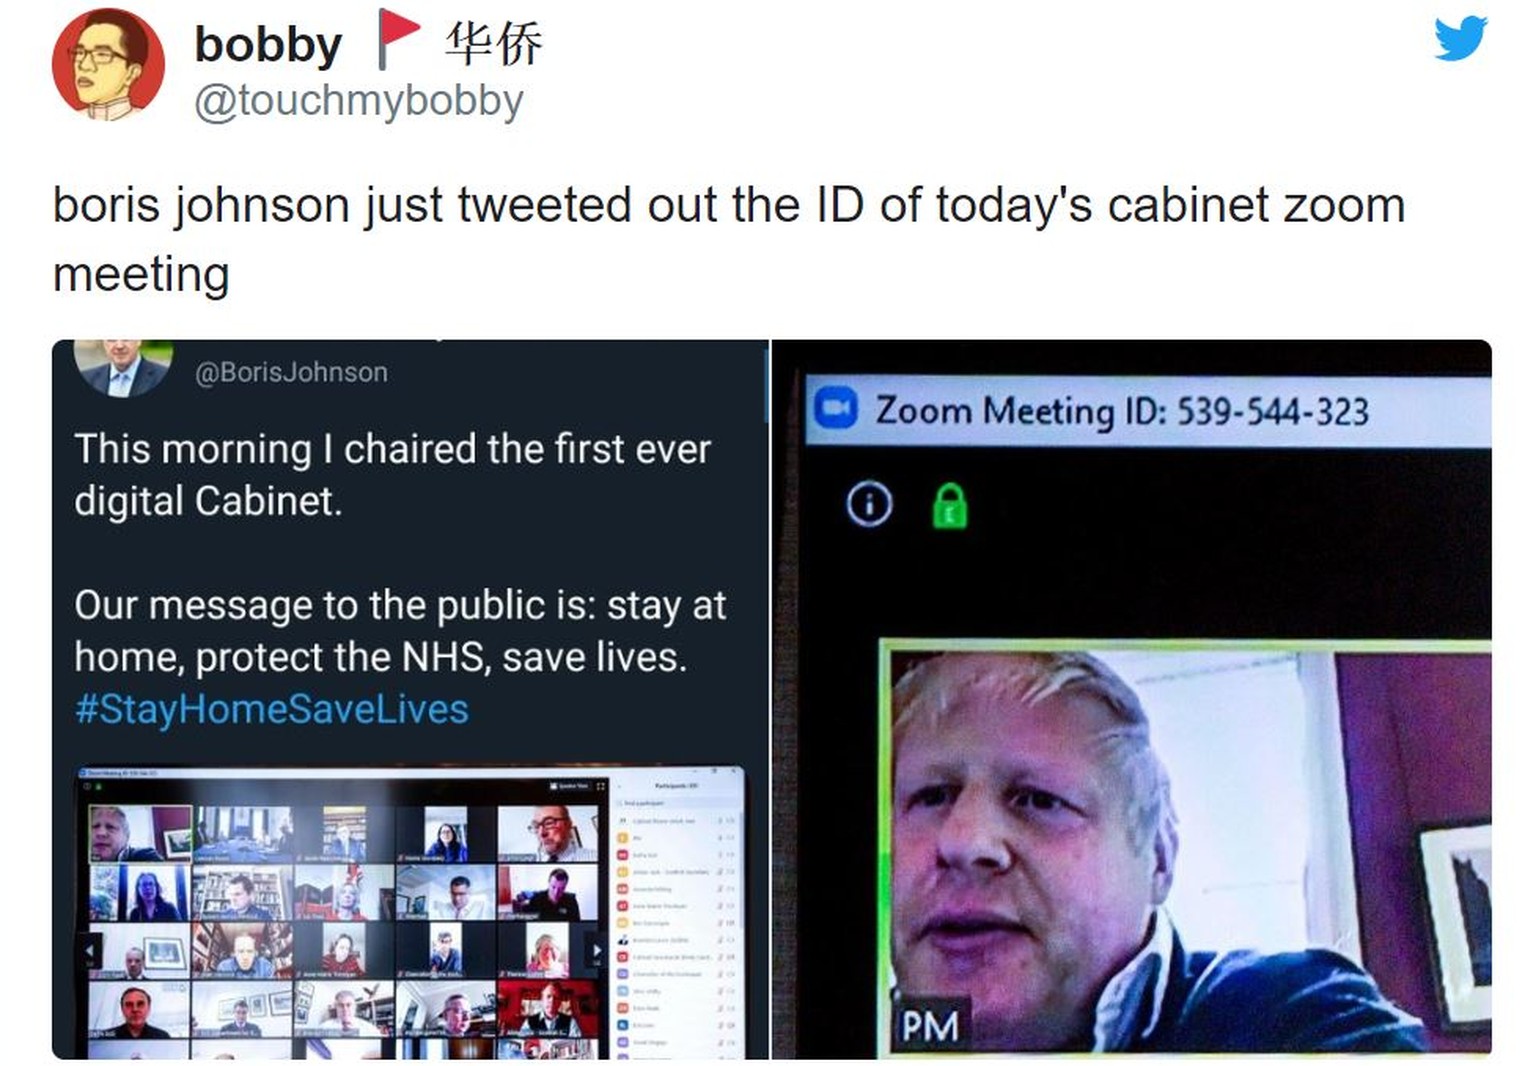 Der britische Premierminister «Boris Johnson hat gerade die Videokonferenz-ID der heutigen Zoom-Kabinettssitzung getwittert».